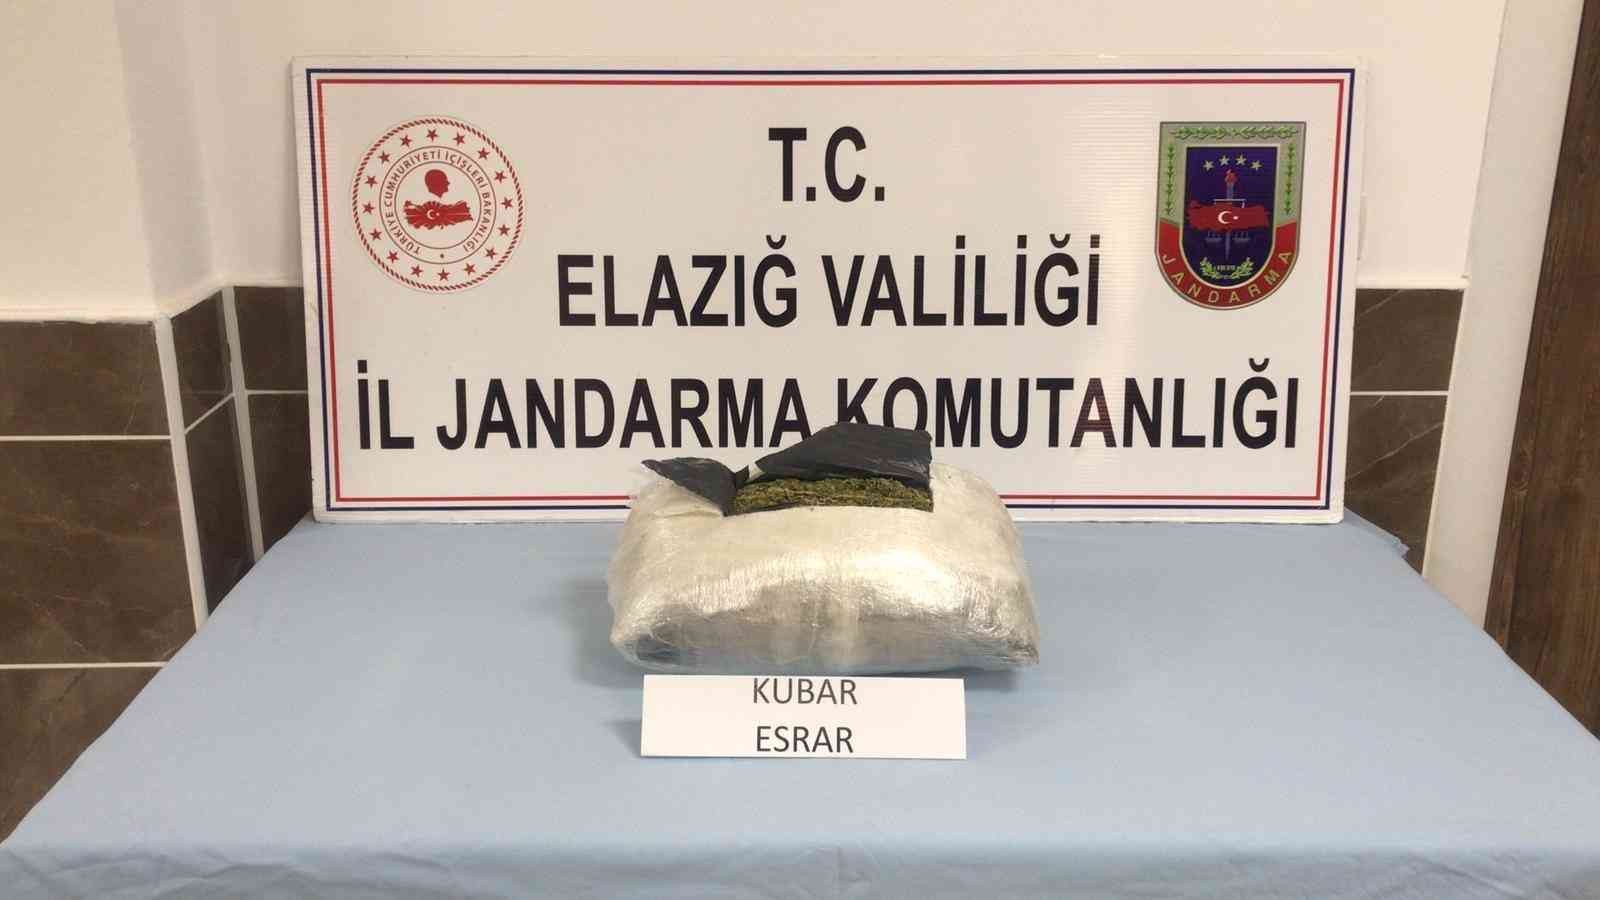 Elazığ’da streç filme sarılı 2,5 kilo esrar ele geçirildi #elazig